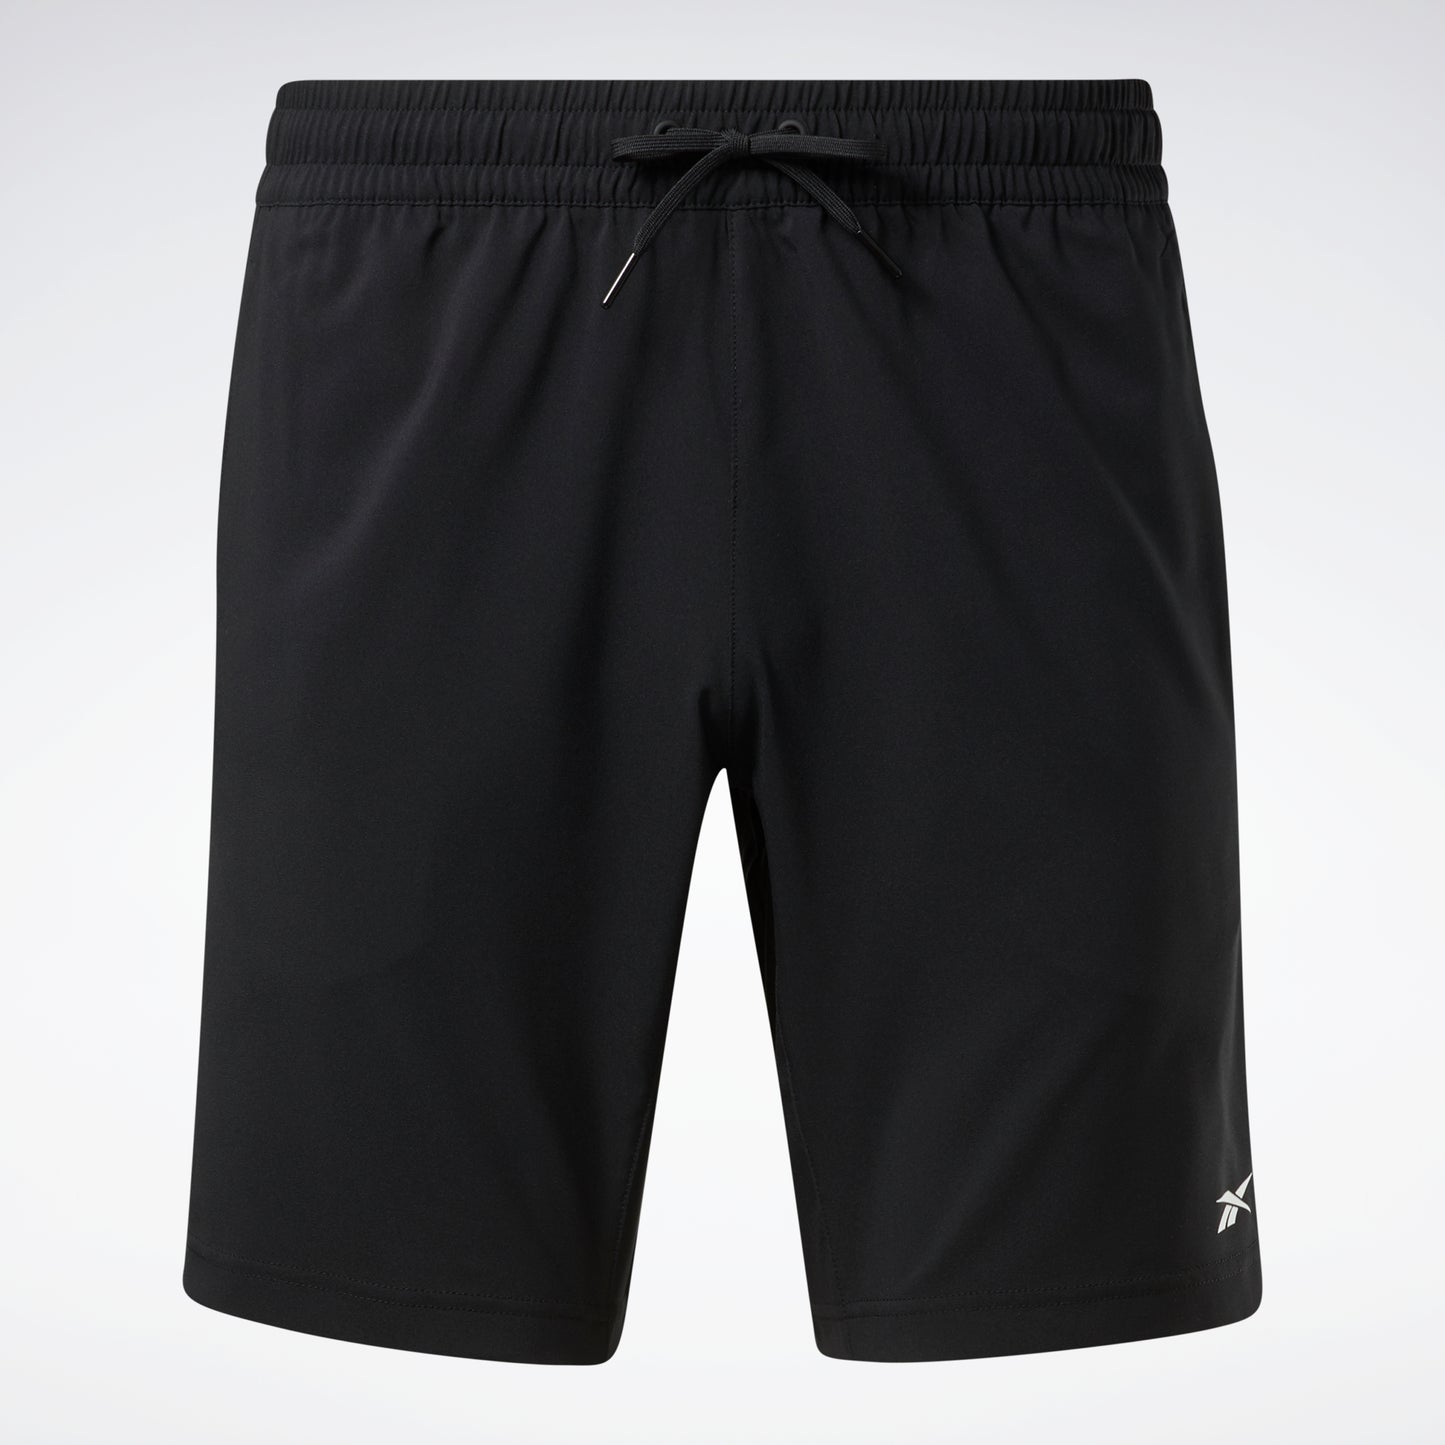 $0 - $25 Workout Essentials Black Shorts.